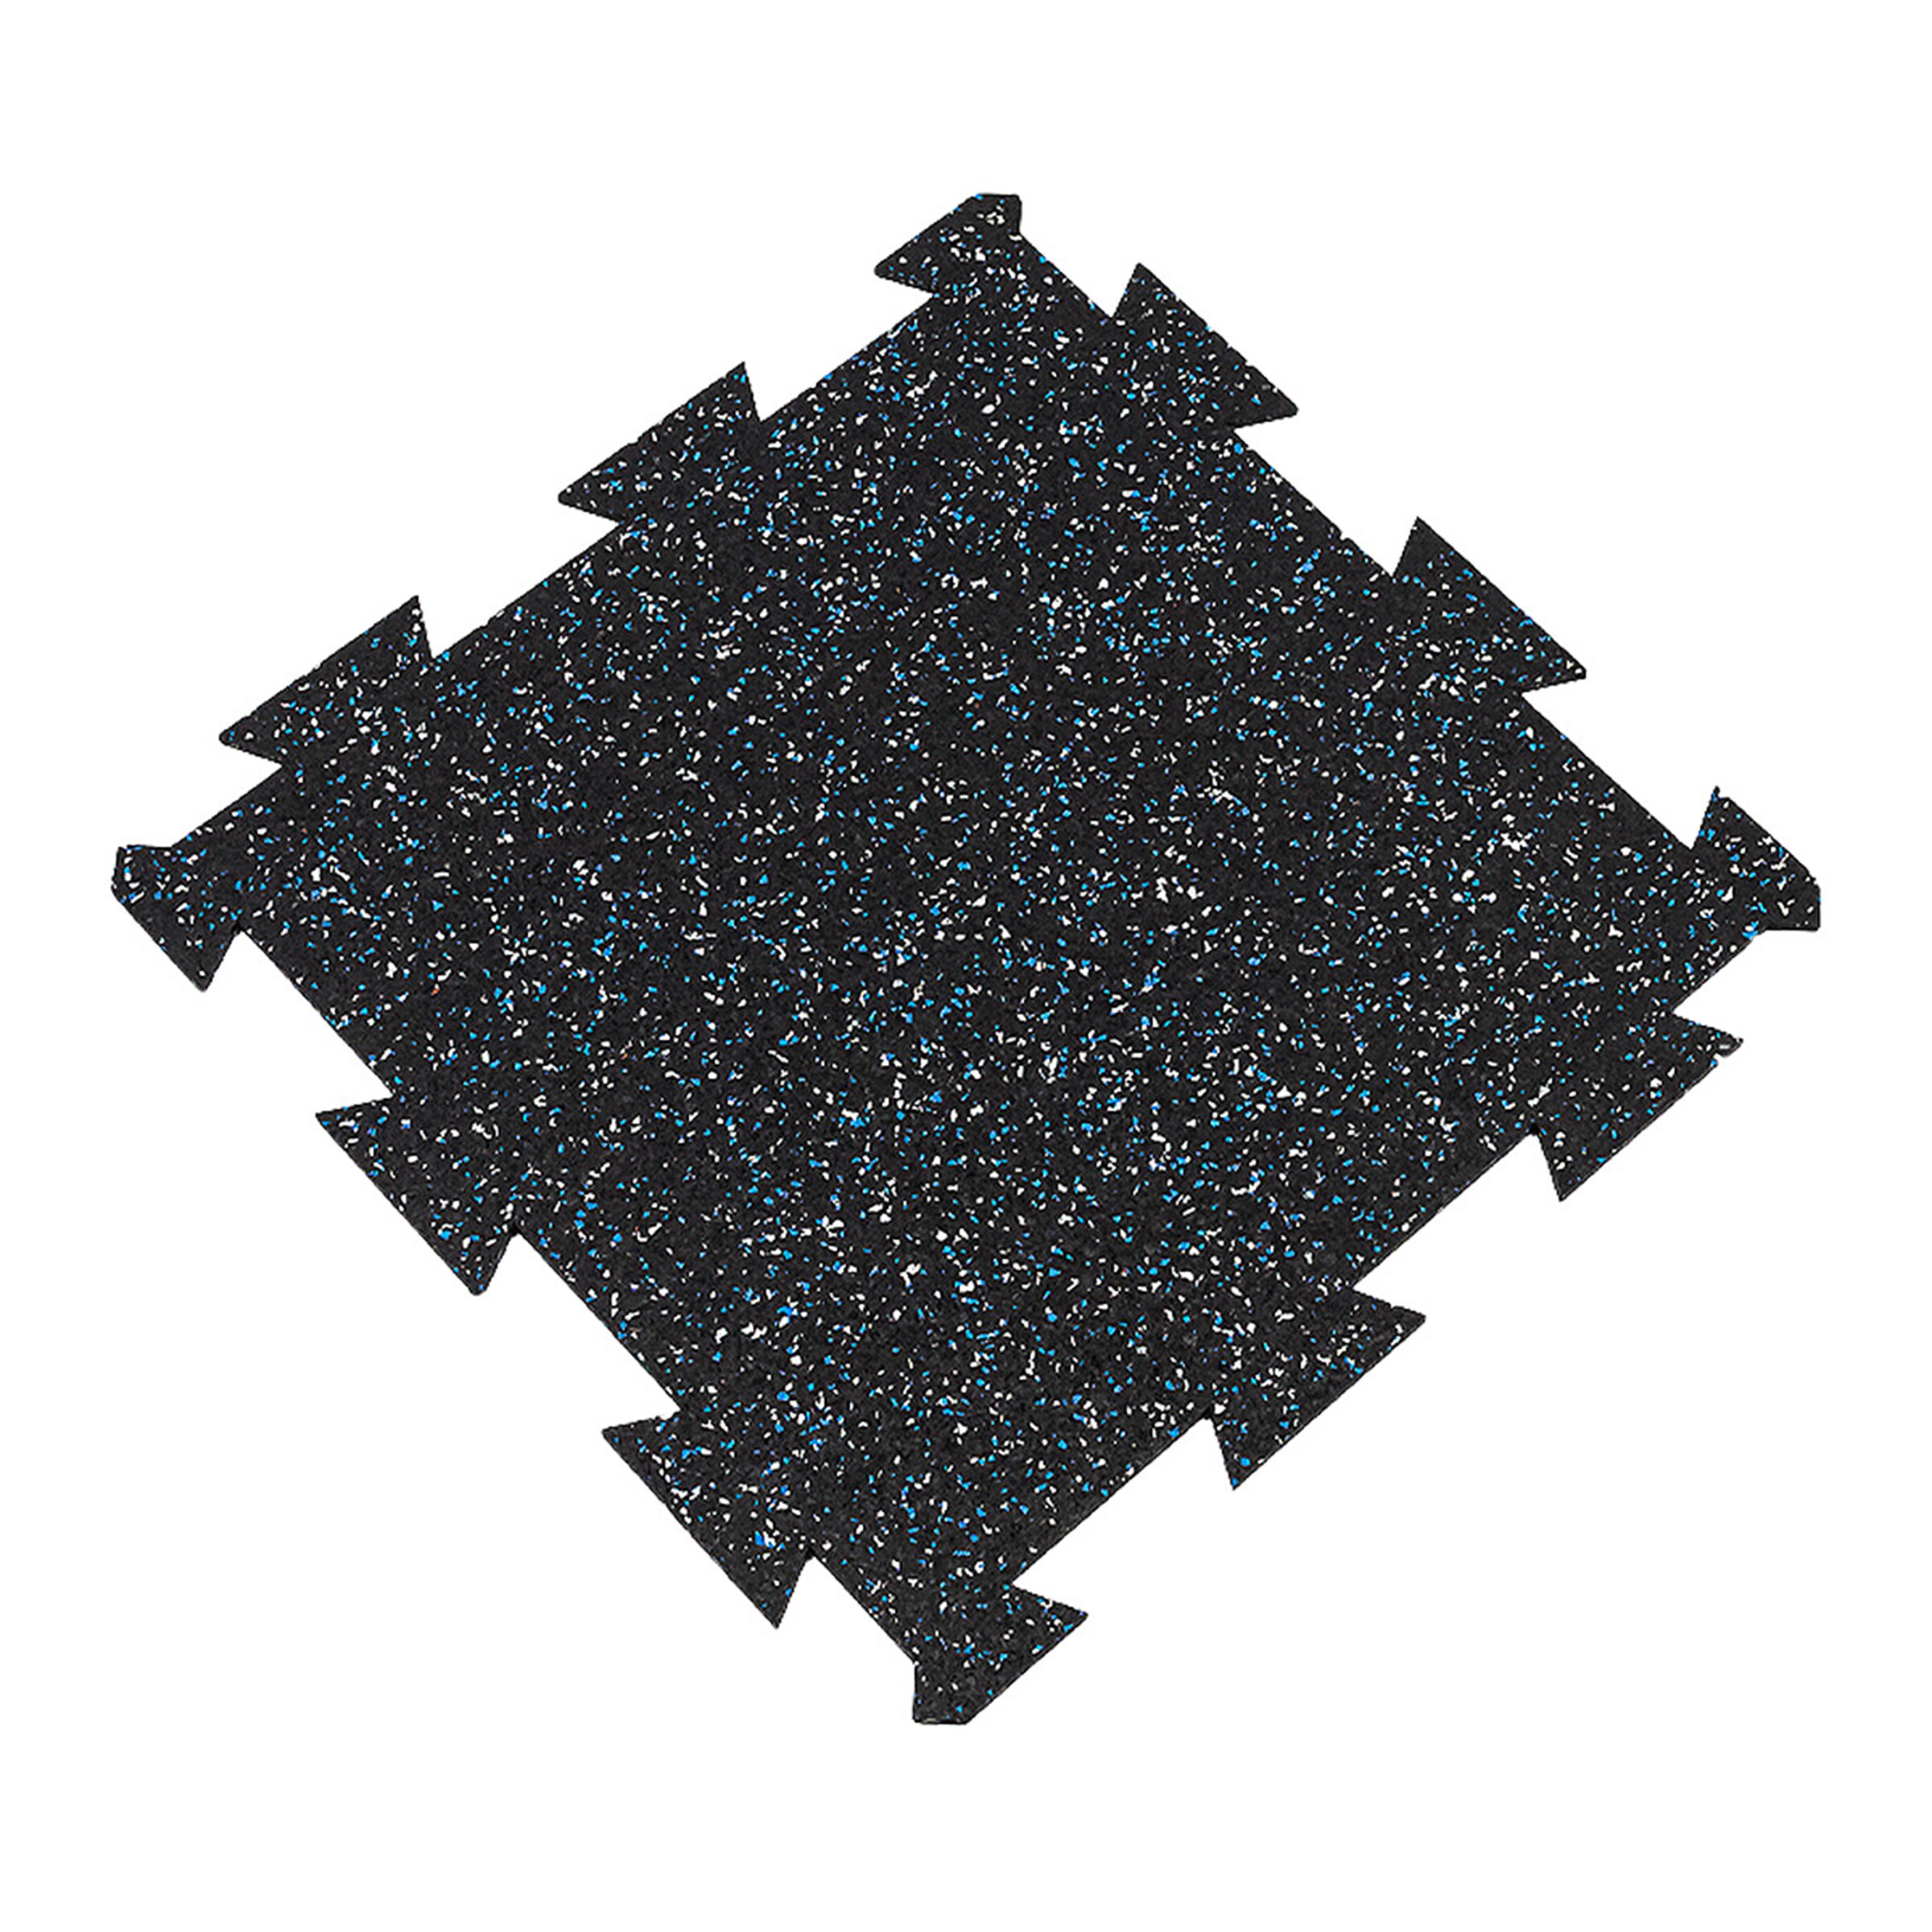 Čierno-bielo-modrá gumová modulová puzzle dlažba (stred) FLOMA FitFlo SF1050 - dĺžka 50 cm, šírka 50 cm, výška 1 cm